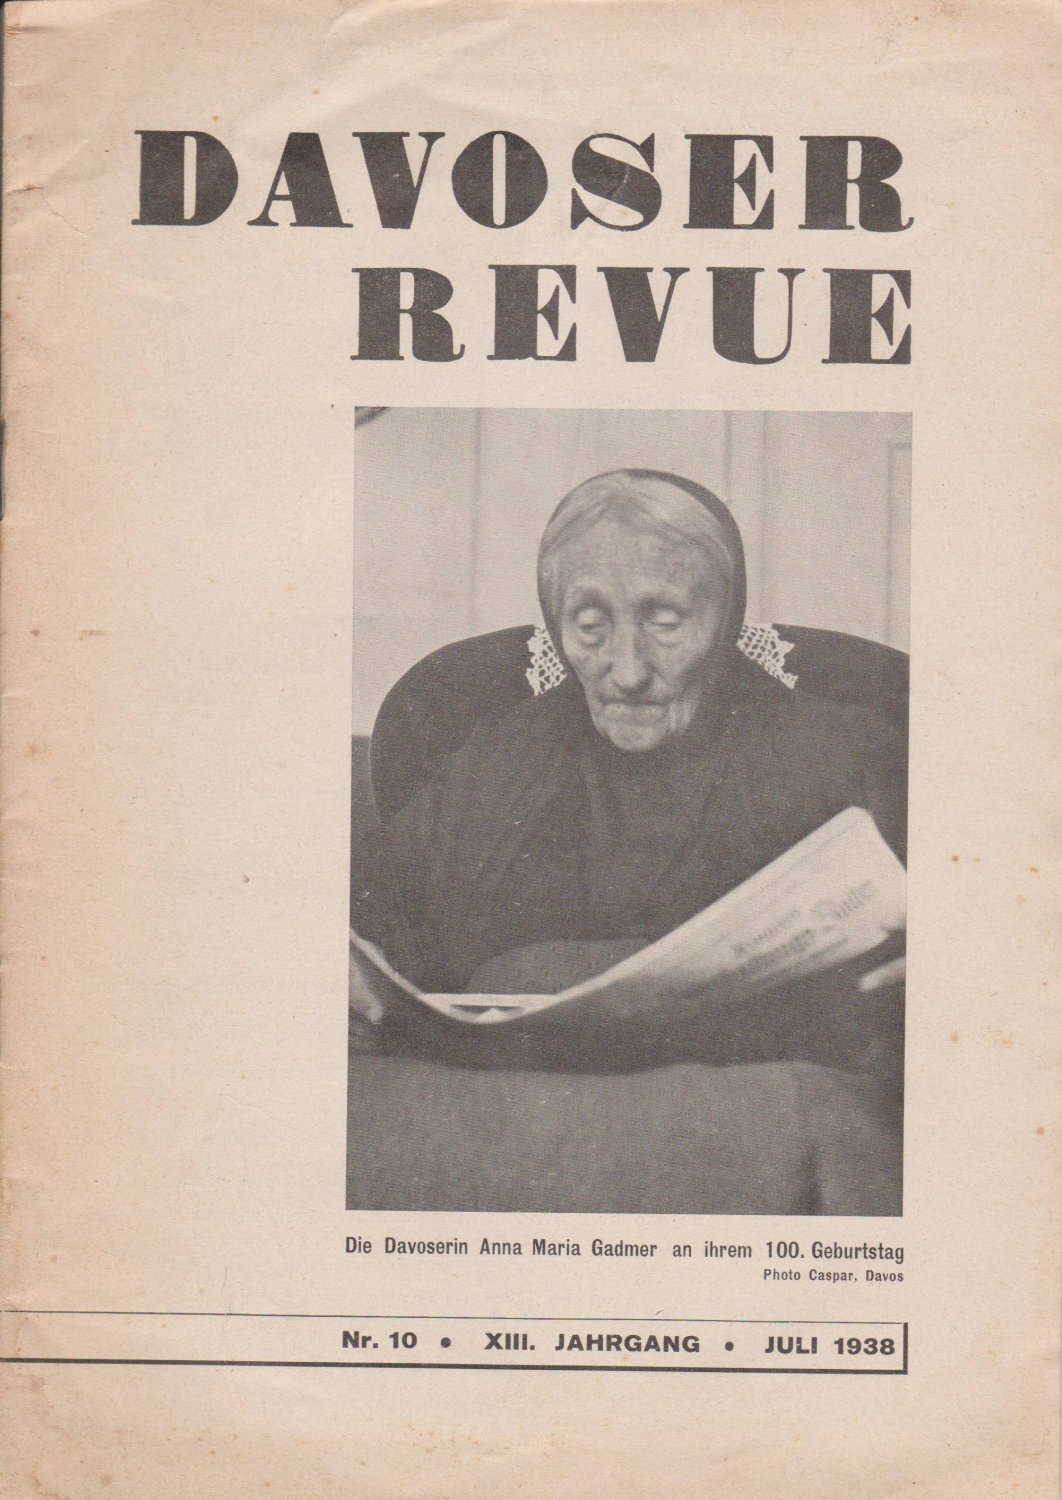   Davoser Revue. XIII. Jahrgang, Nummer 10, Juli 1938. Zeitschrift für Literatur, Wissenschaft, Kunst und Sport. 